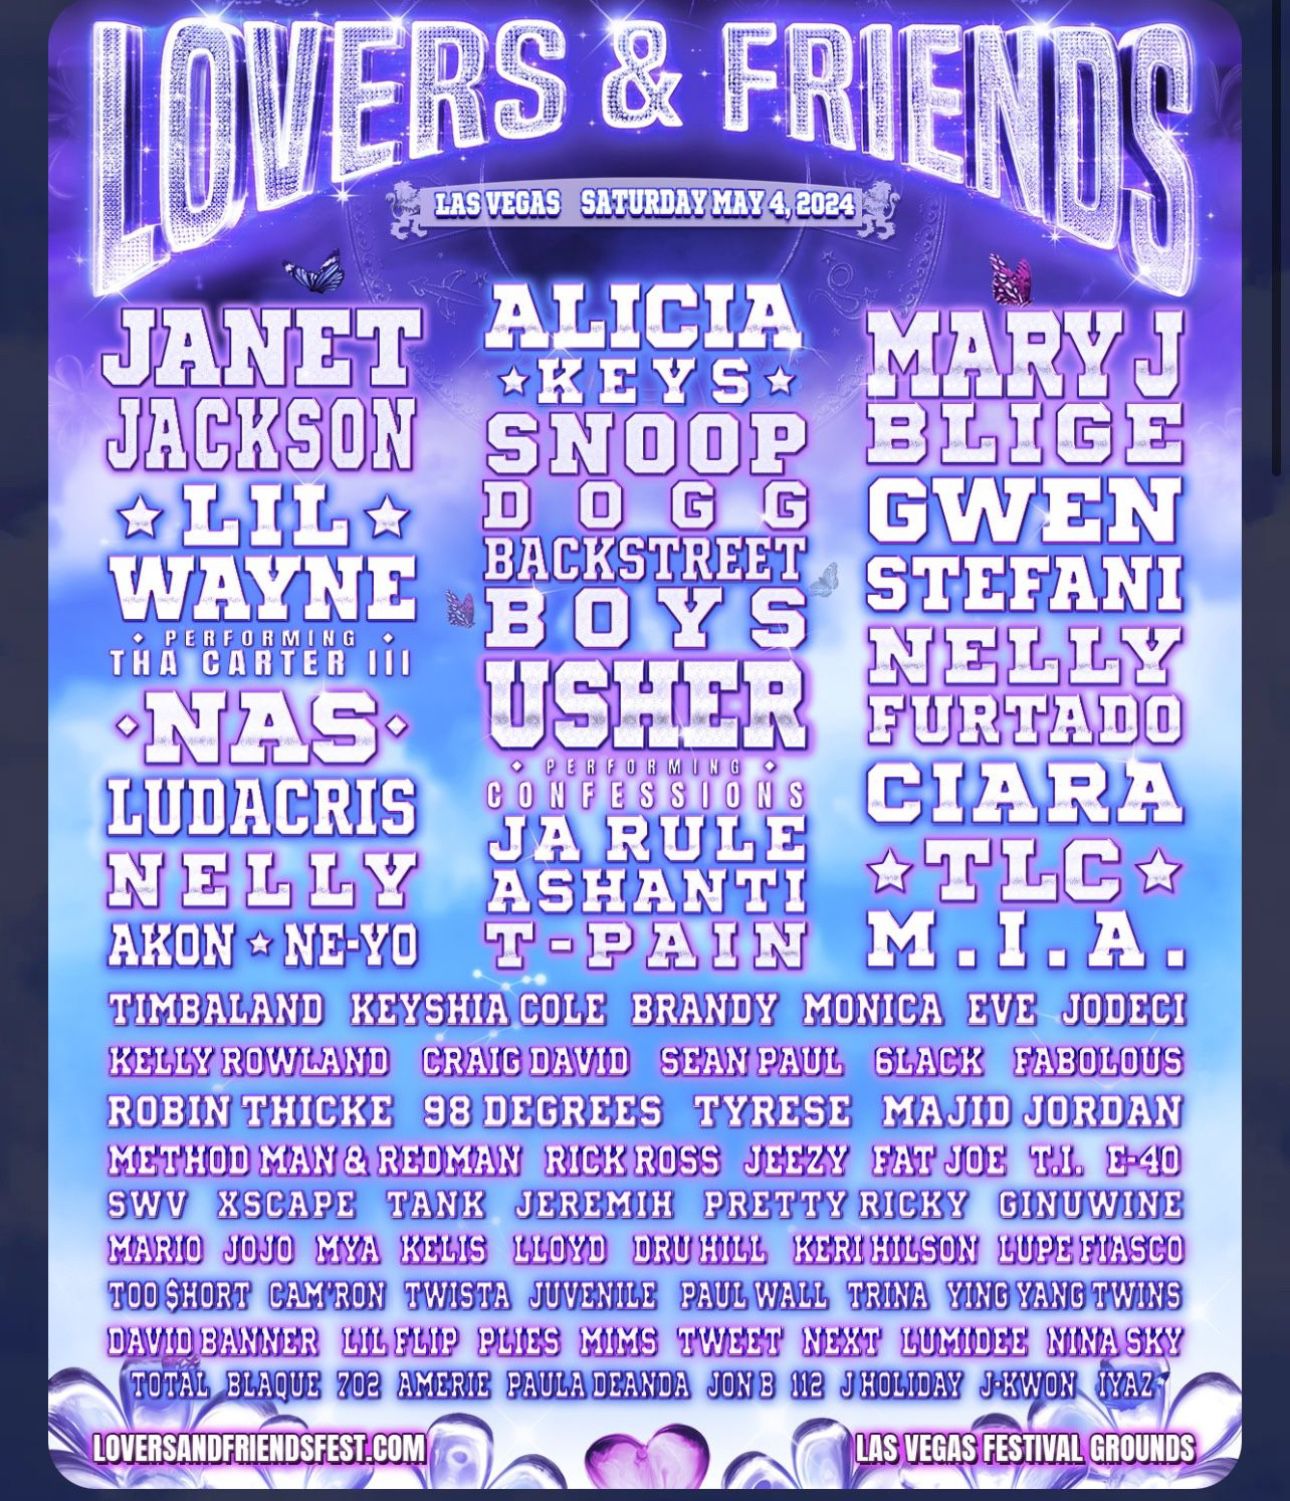 Lovers & Friends GA Tickets 